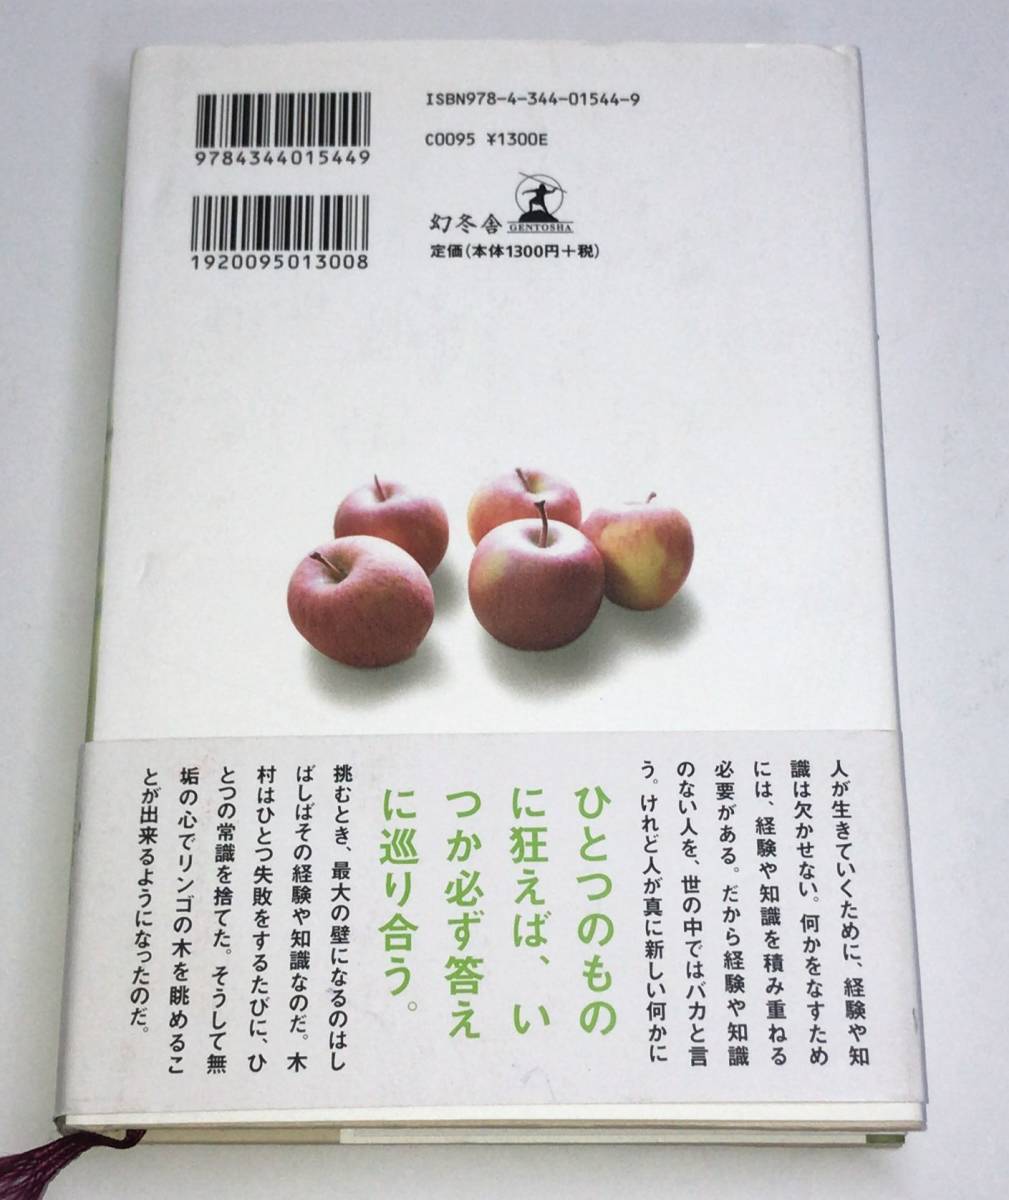 奇跡のリンゴ―「絶対不可能」を覆した農家・木村秋則の記録 ナオキマン